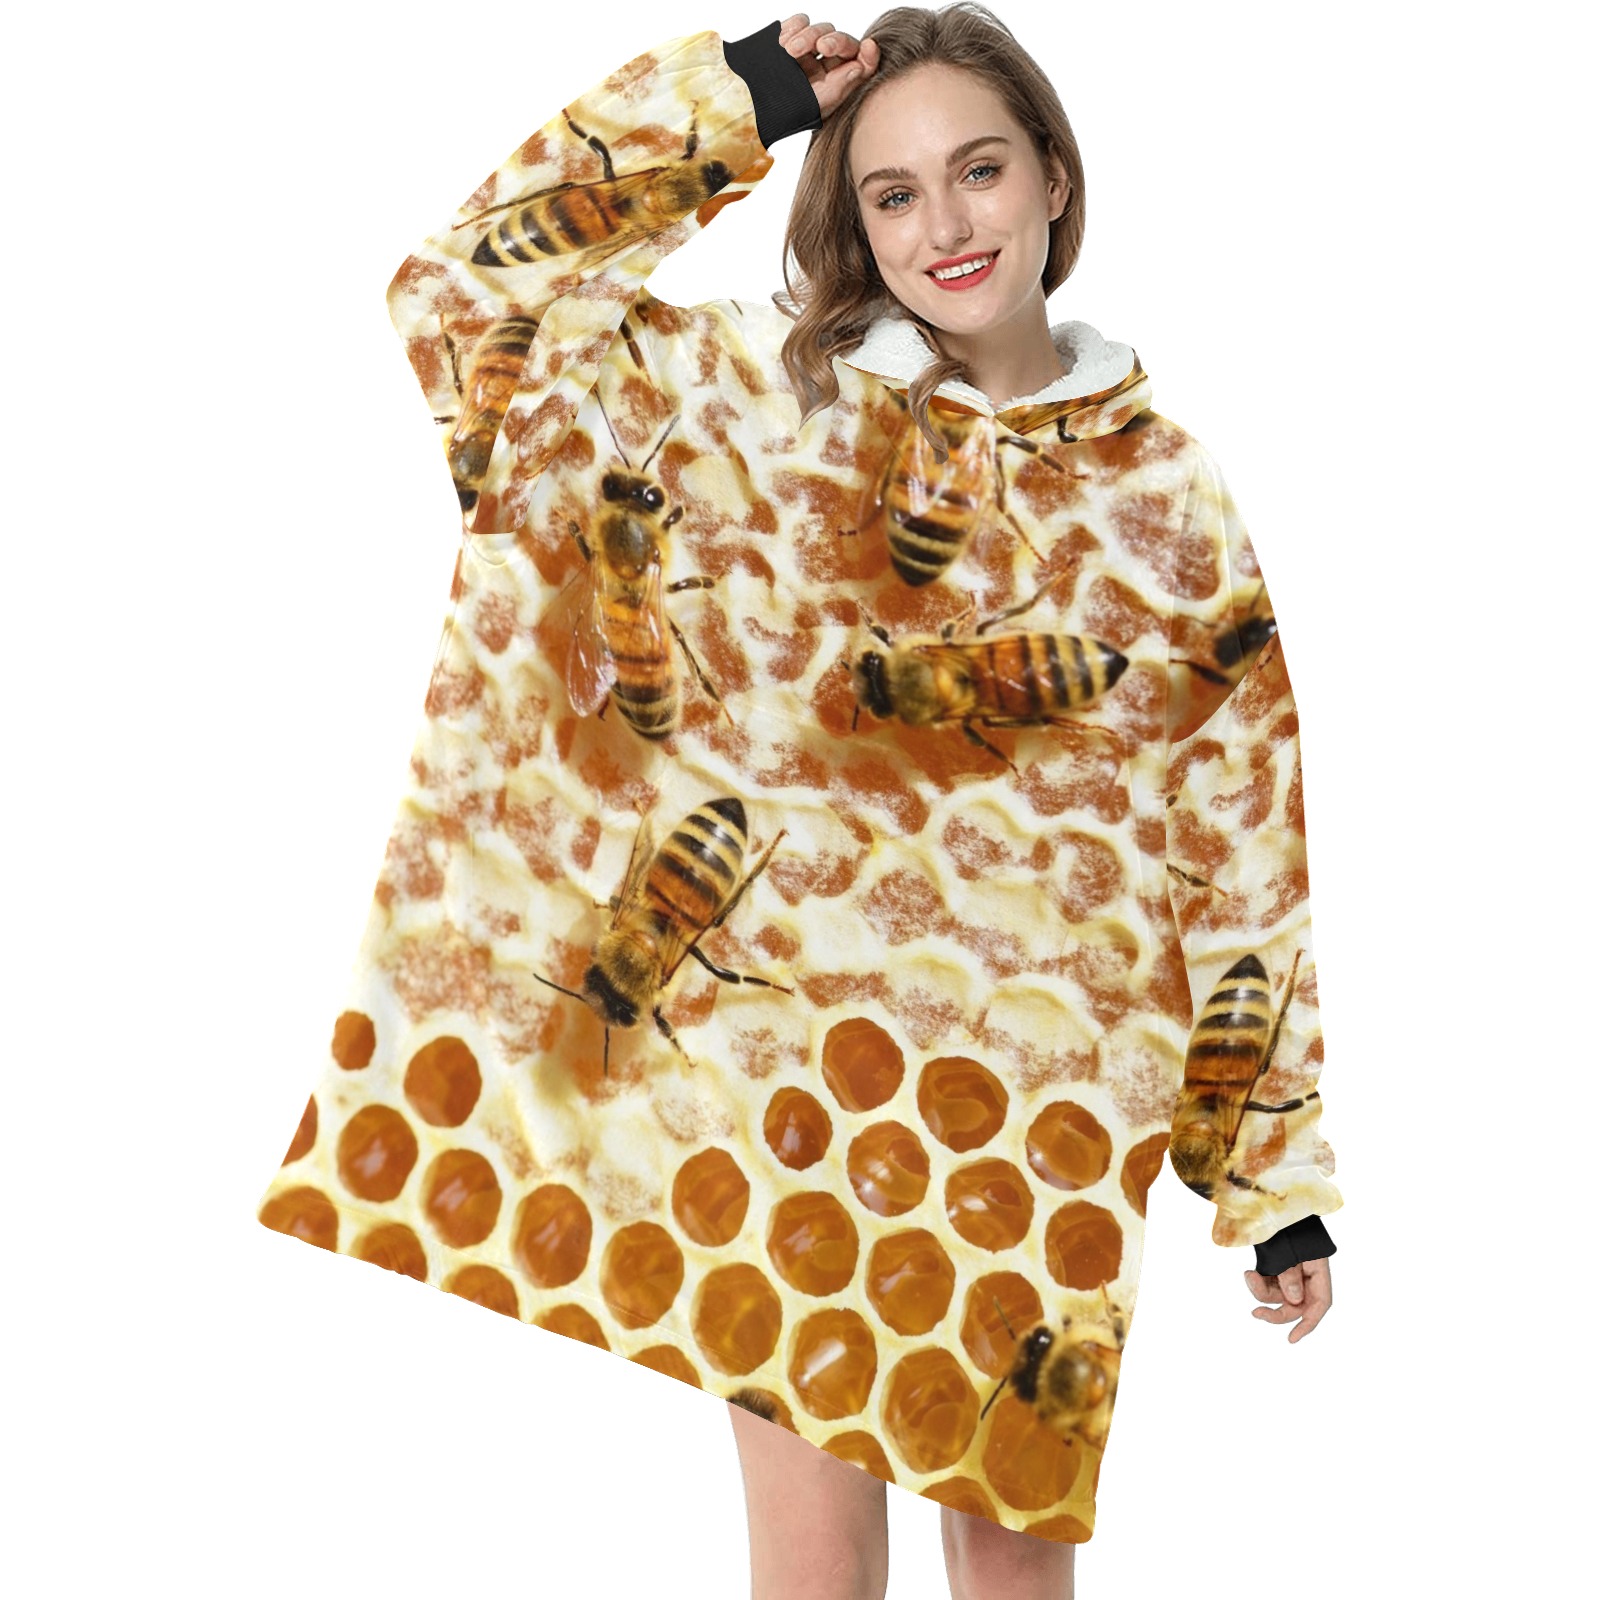 HONEY BEES 2 Blanket Hoodie for Women